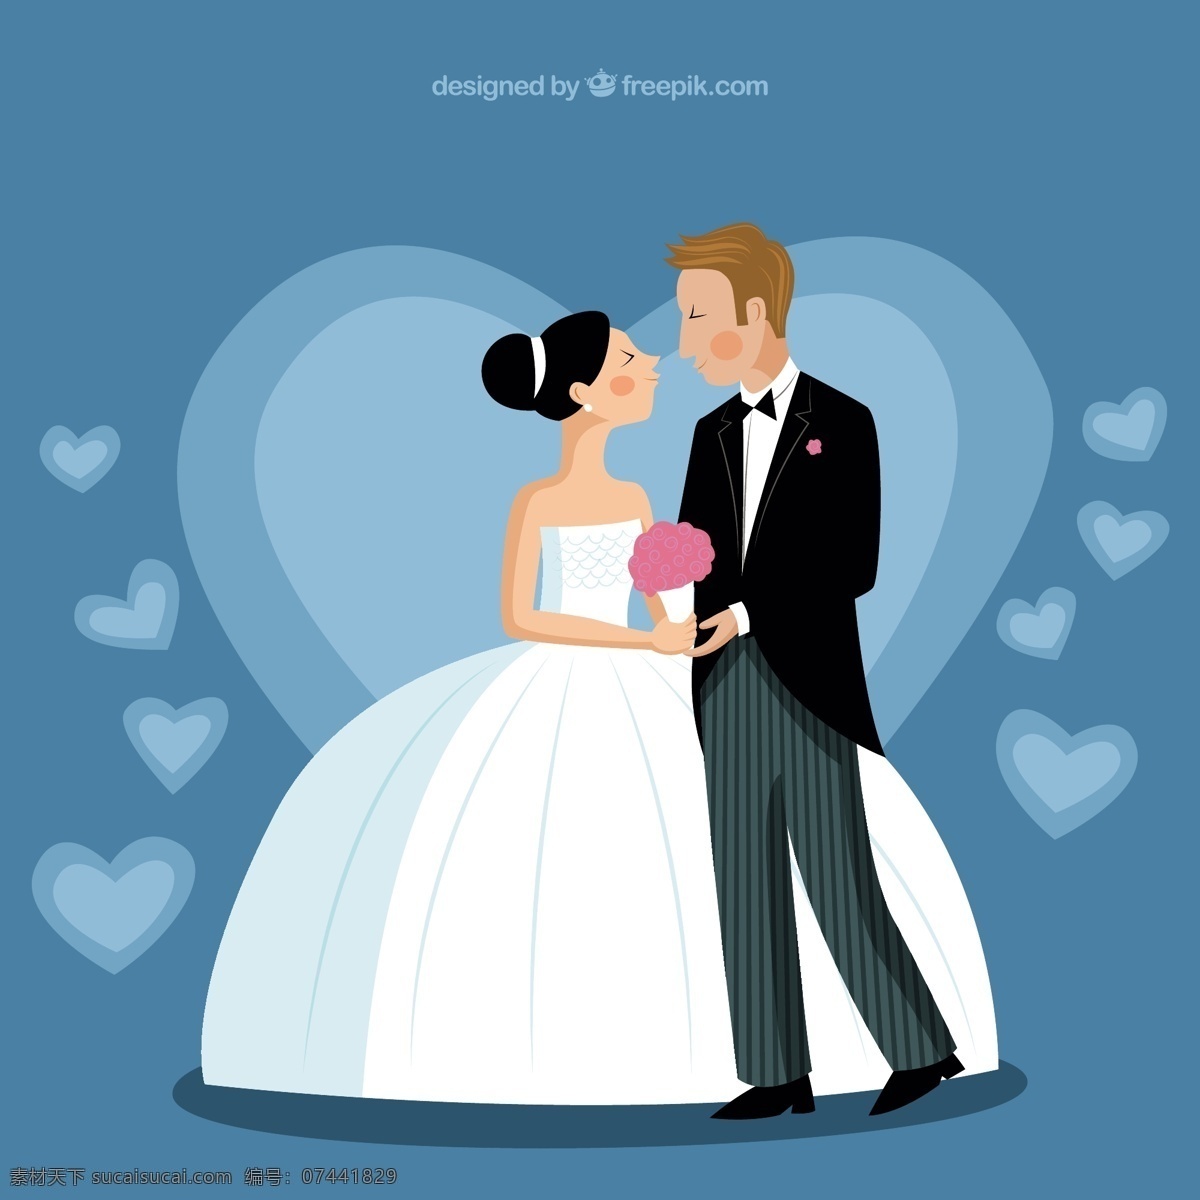 新娘和新郎 插图 结婚 爱情 新娘 白色